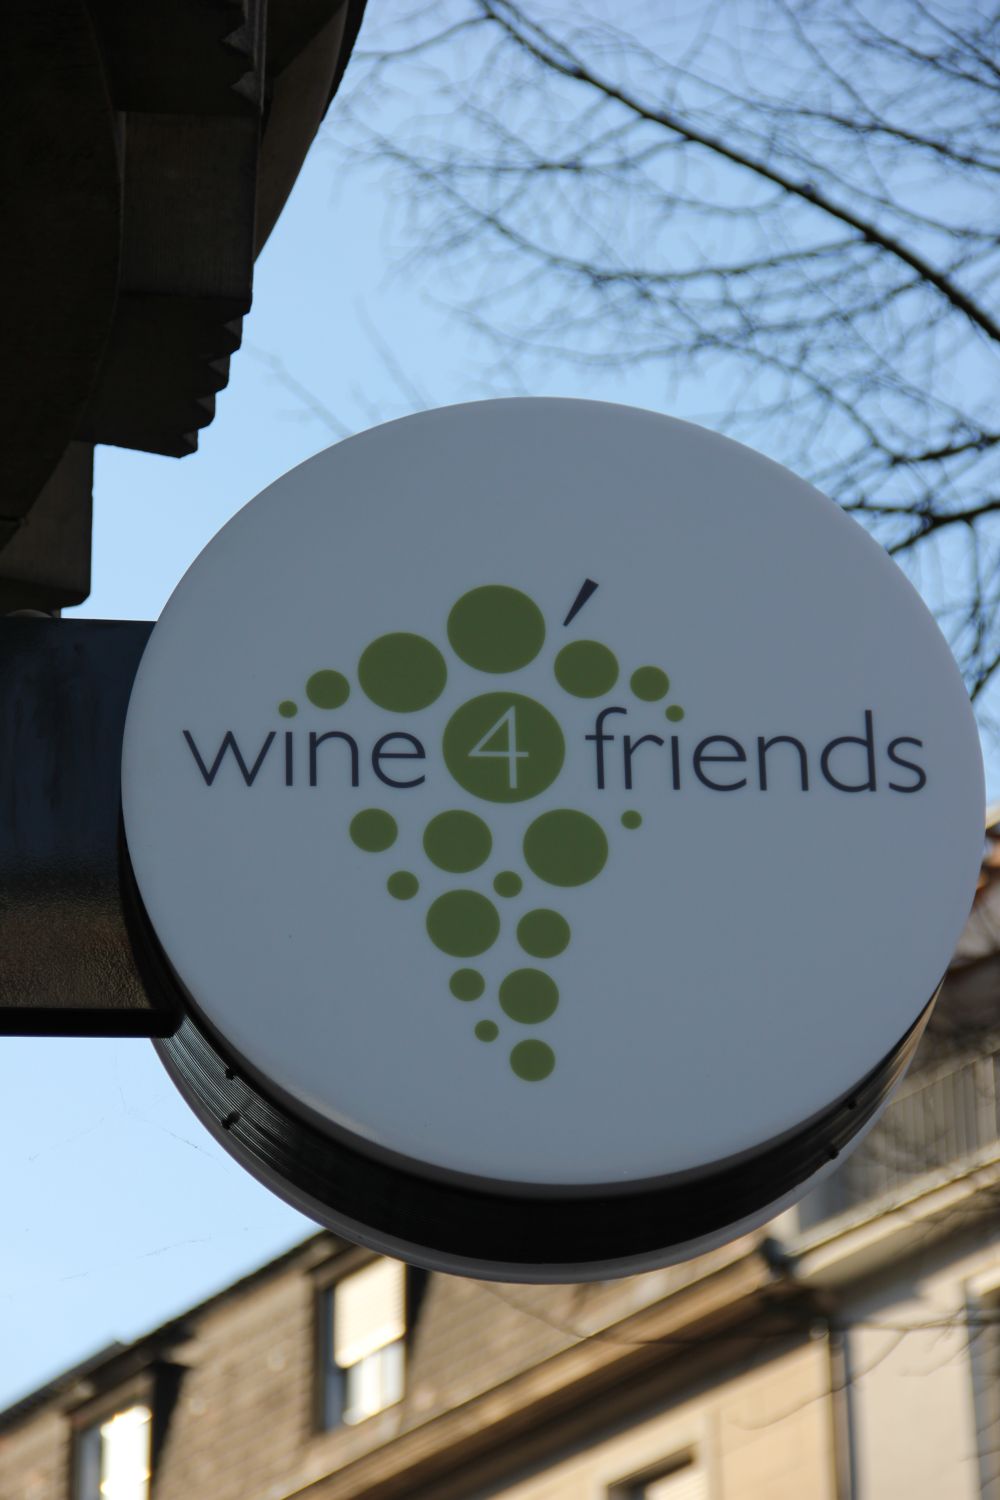 Weinladen wine4friends